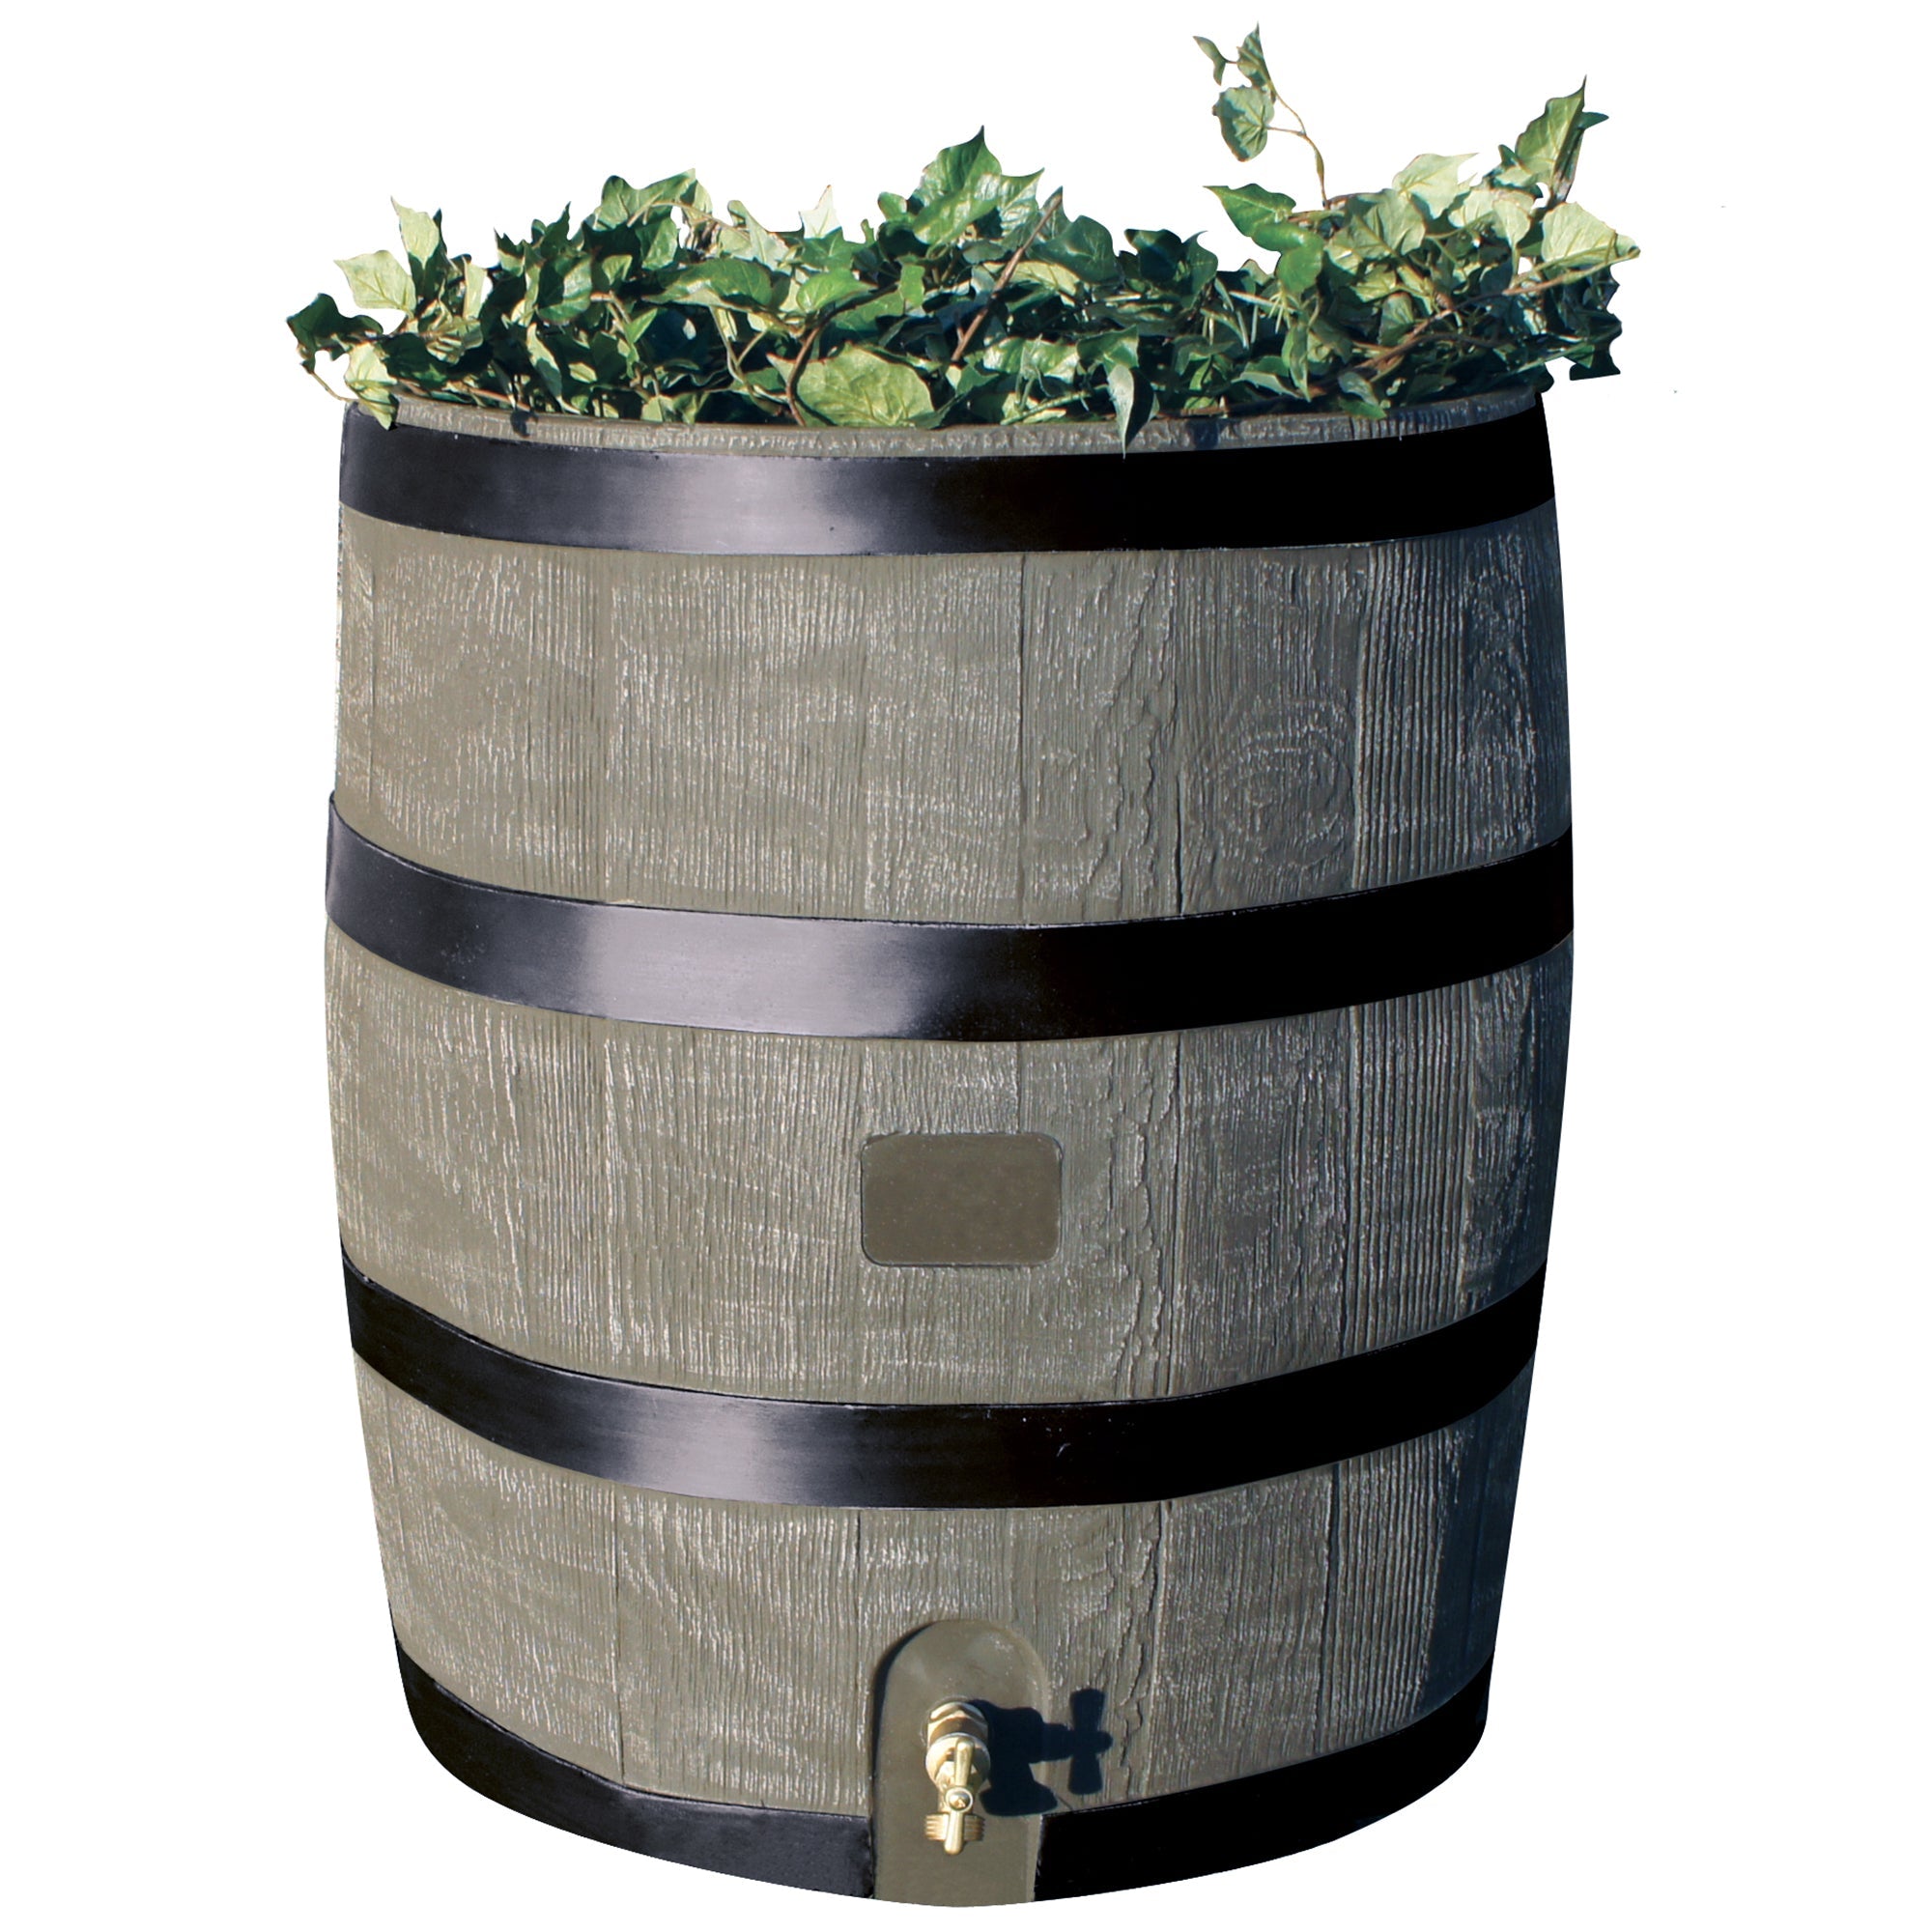 35 Gallon Round Rain Barrel With Planter